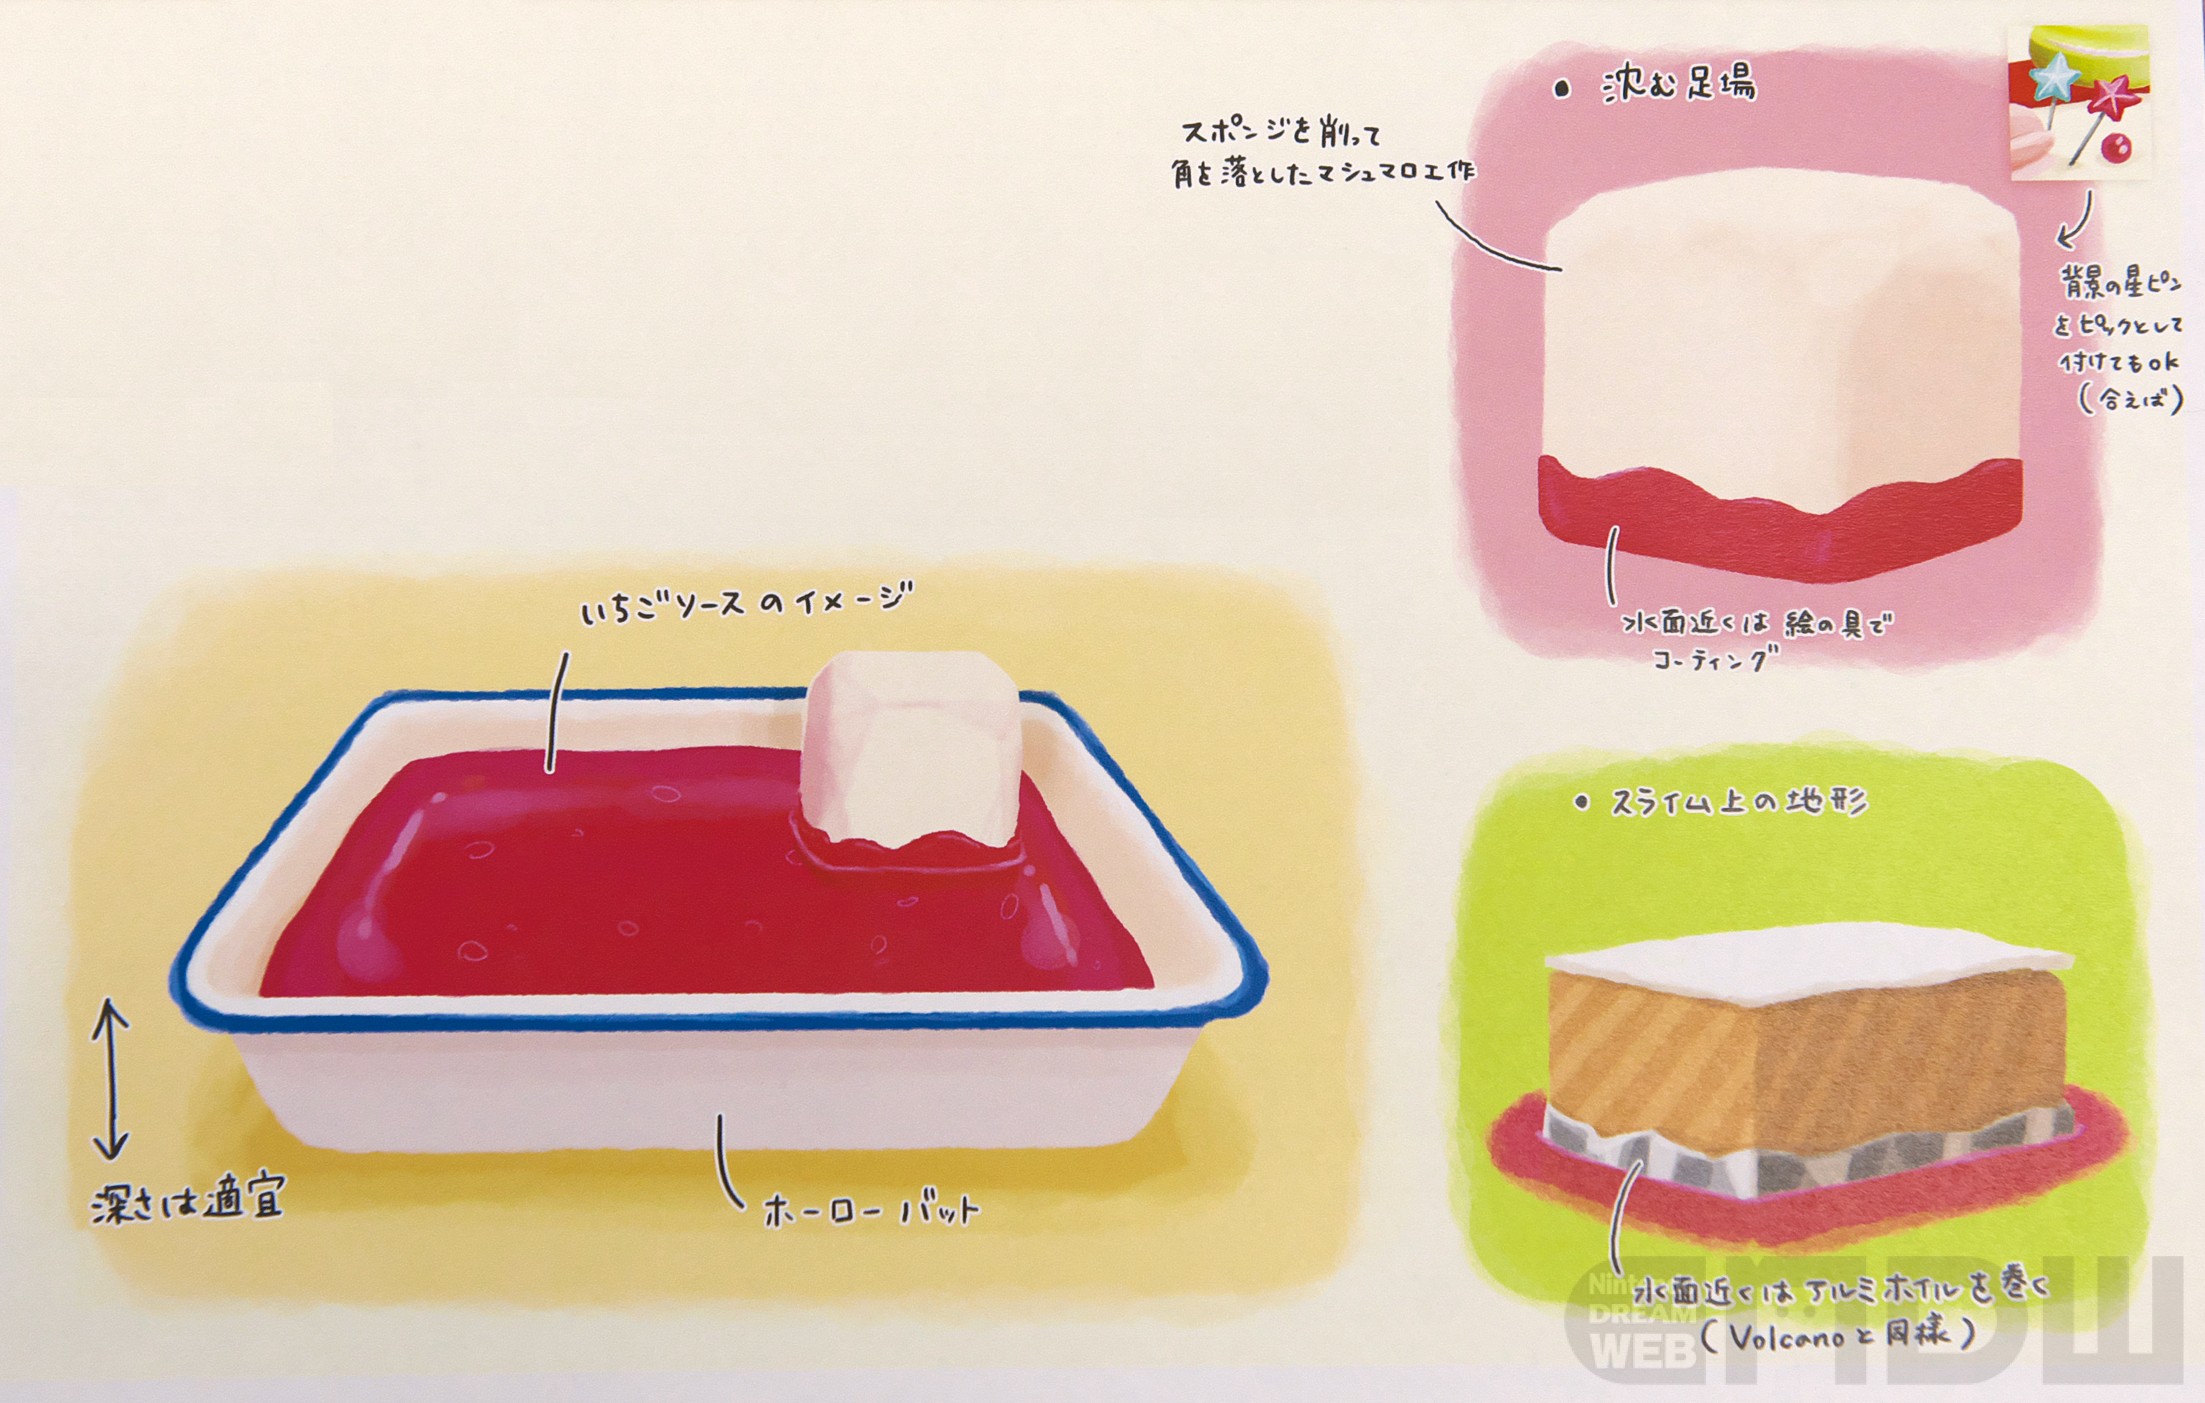 红色液体的真面目是平底盘里装着的酱。有着像是草莓酱一样的颜色。支撑海绵的是棉花糖手工。真的像是点心一样！